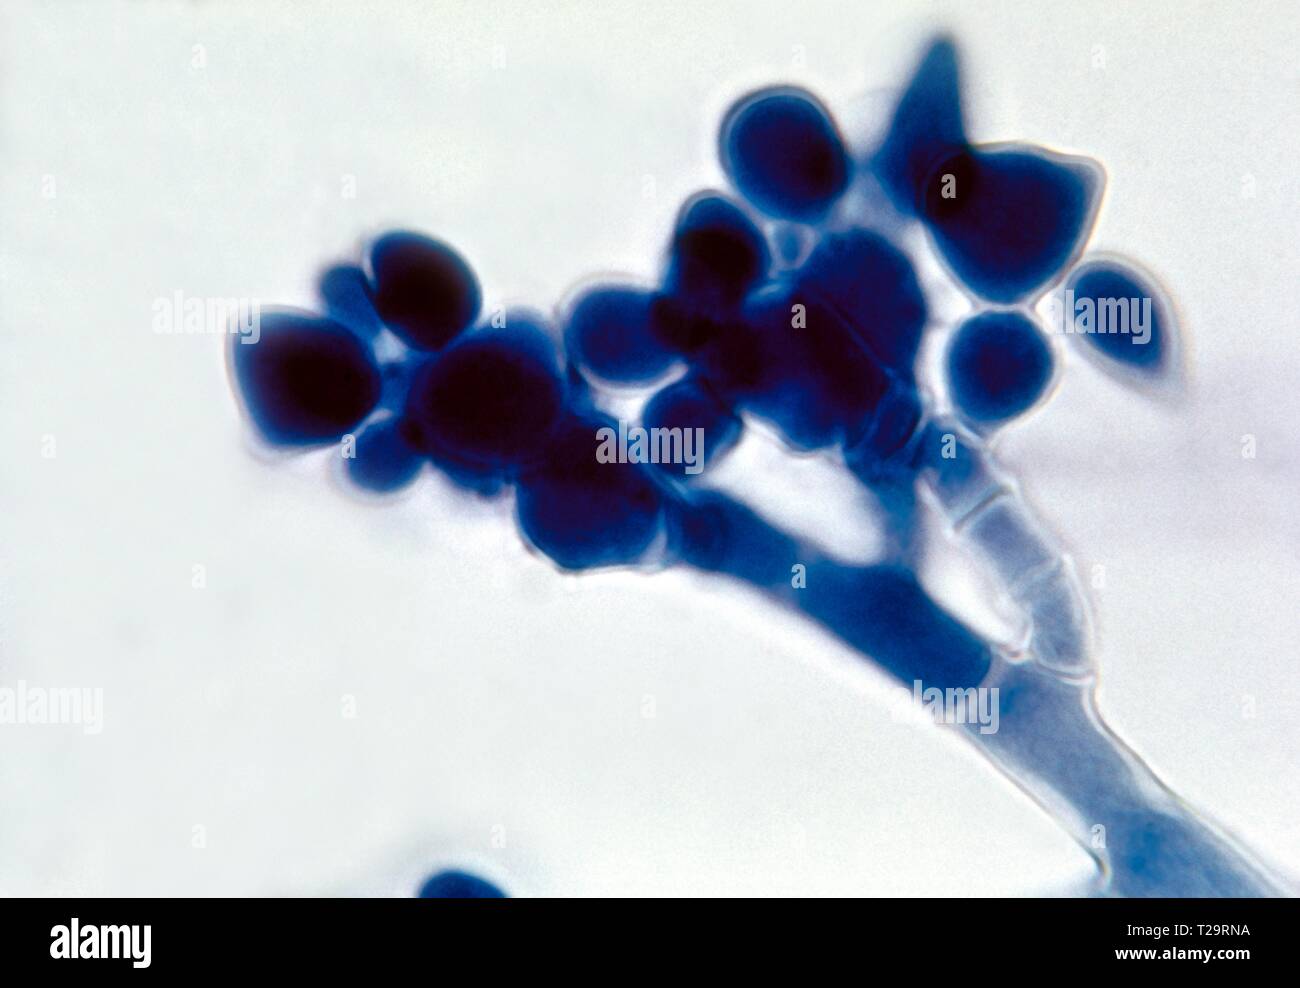 La fotomicrografia di Botrytis specie fungina (muffa grigia), mostrando ai cluster di spora asessuata-contenenti conidi, 1955. Immagine cortesia di centri per il controllo e la prevenzione delle malattie (CDC) / Dr Lucille K. Georg. () Foto Stock